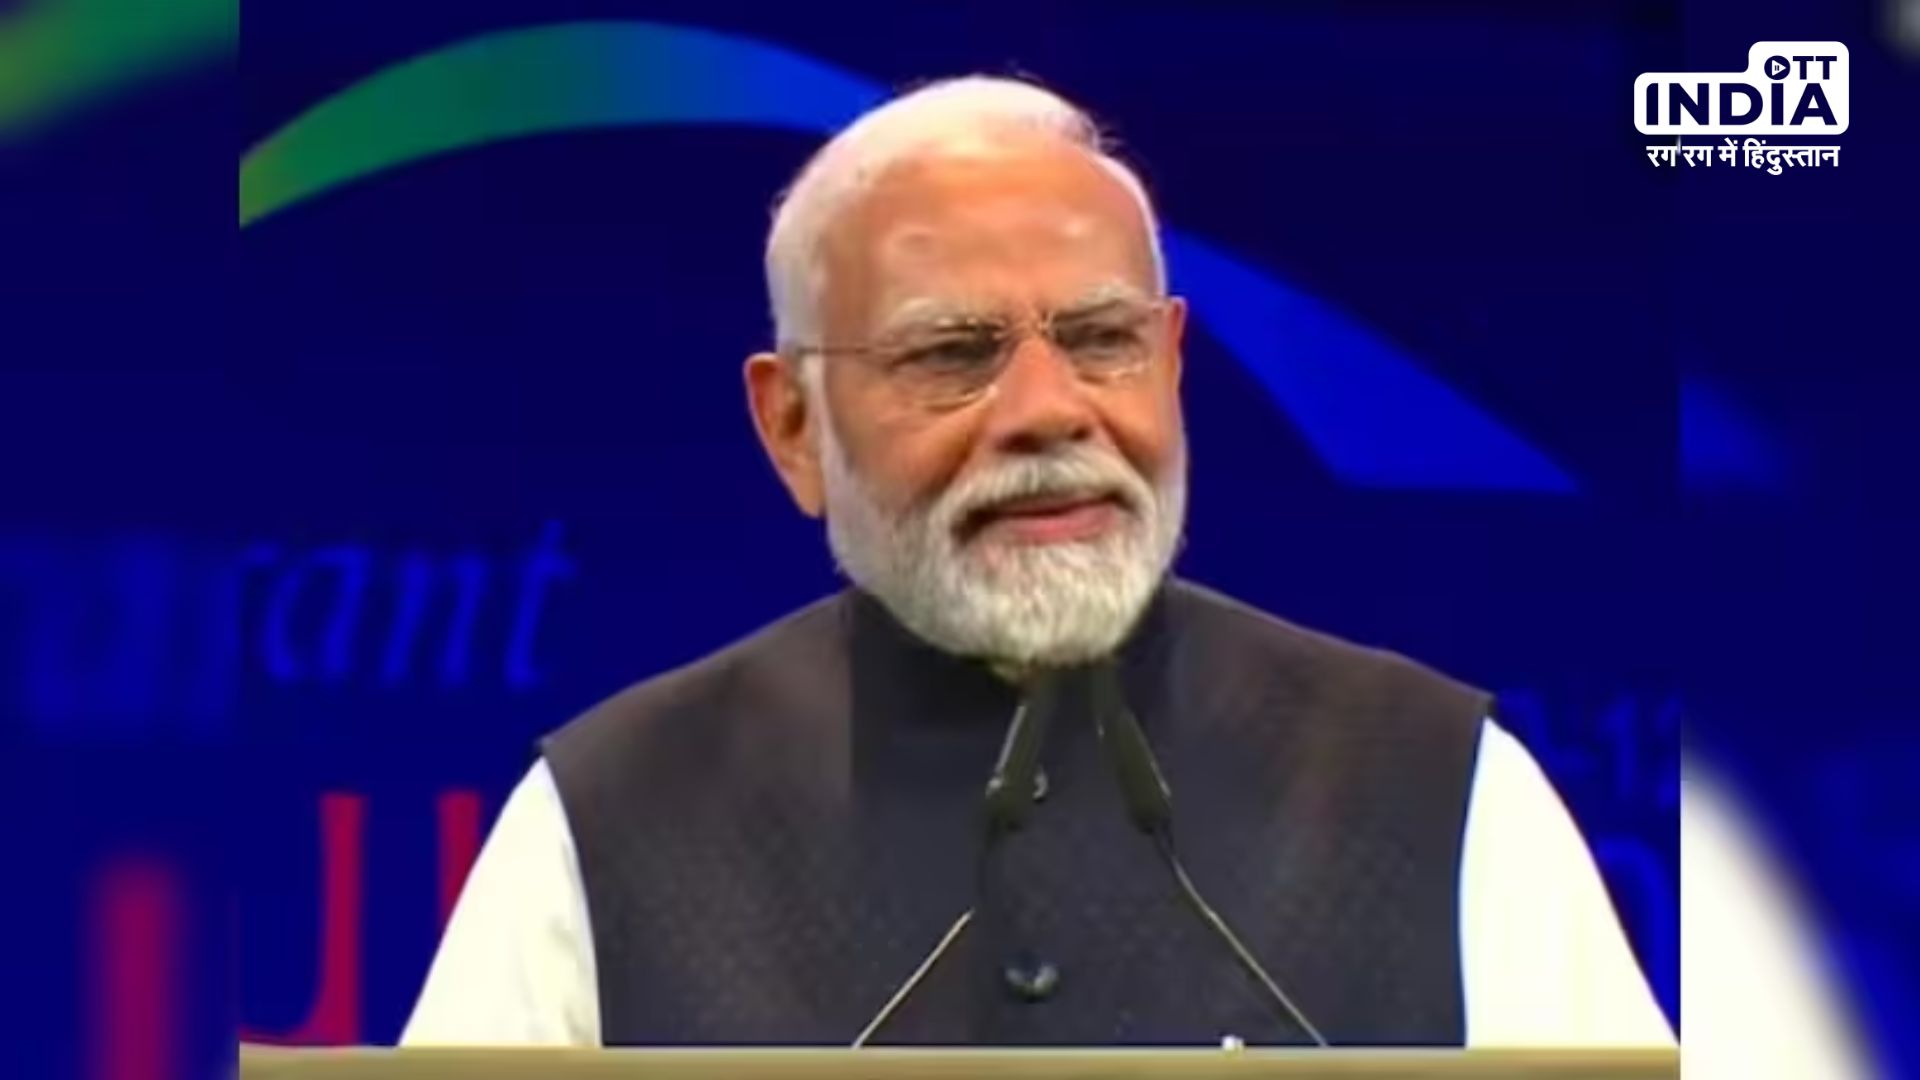 Global Summit 2024 : भारत दुनिया की तीसरी सबसे बड़ी अर्थव्यवस्था होगा, ये मोदी की गारंटी है : PM Modi